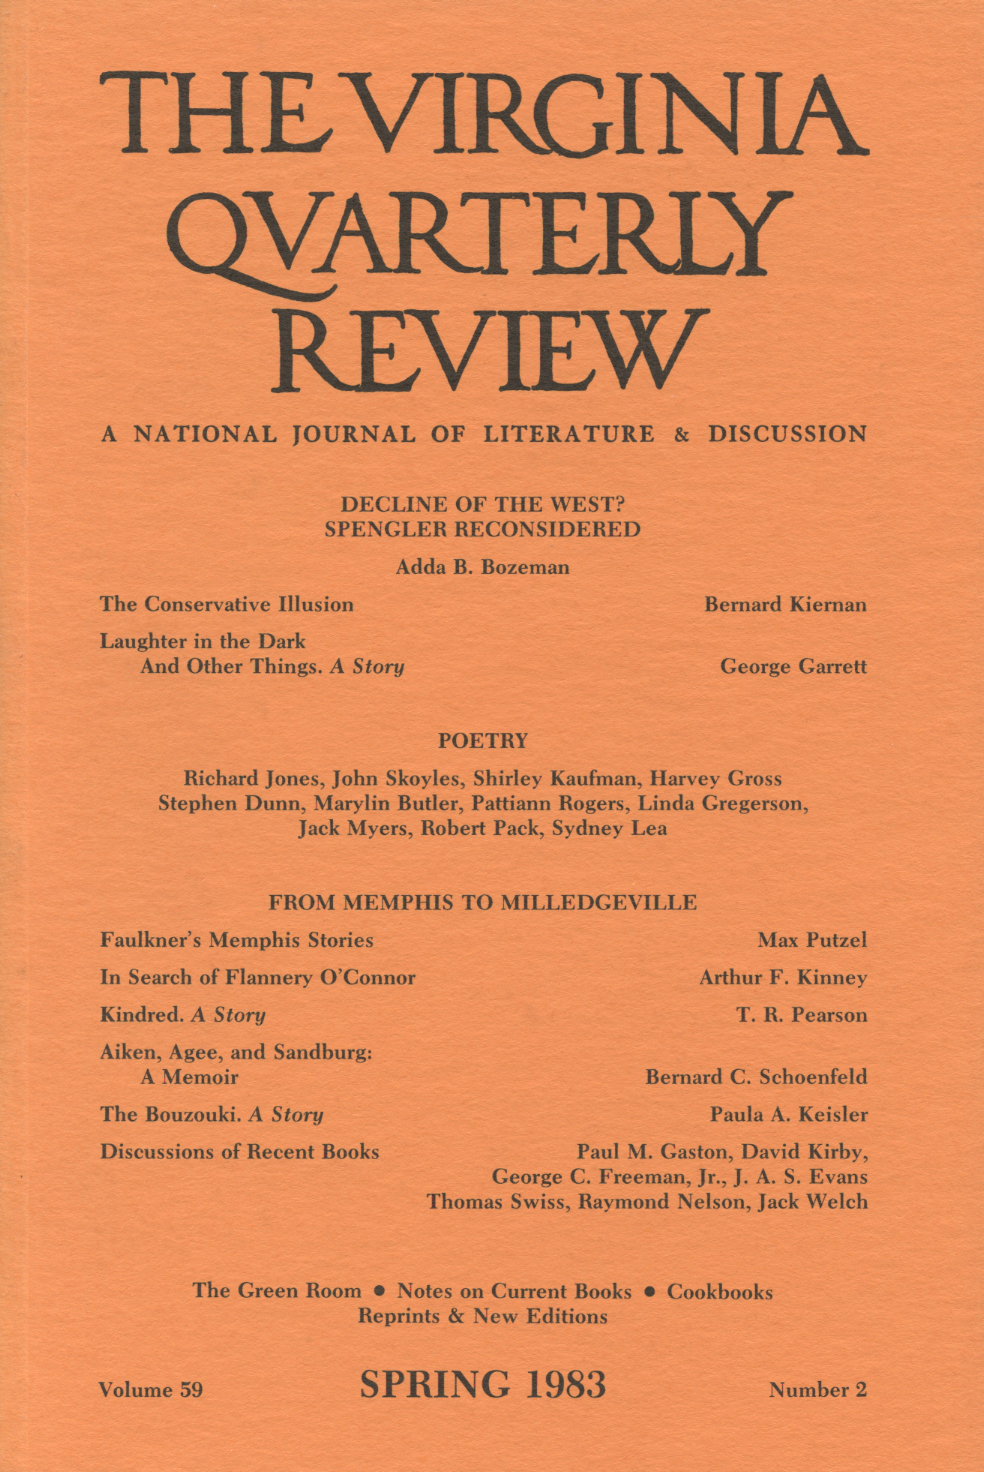 Virginia Quarterly Review, Spring 1983 cover